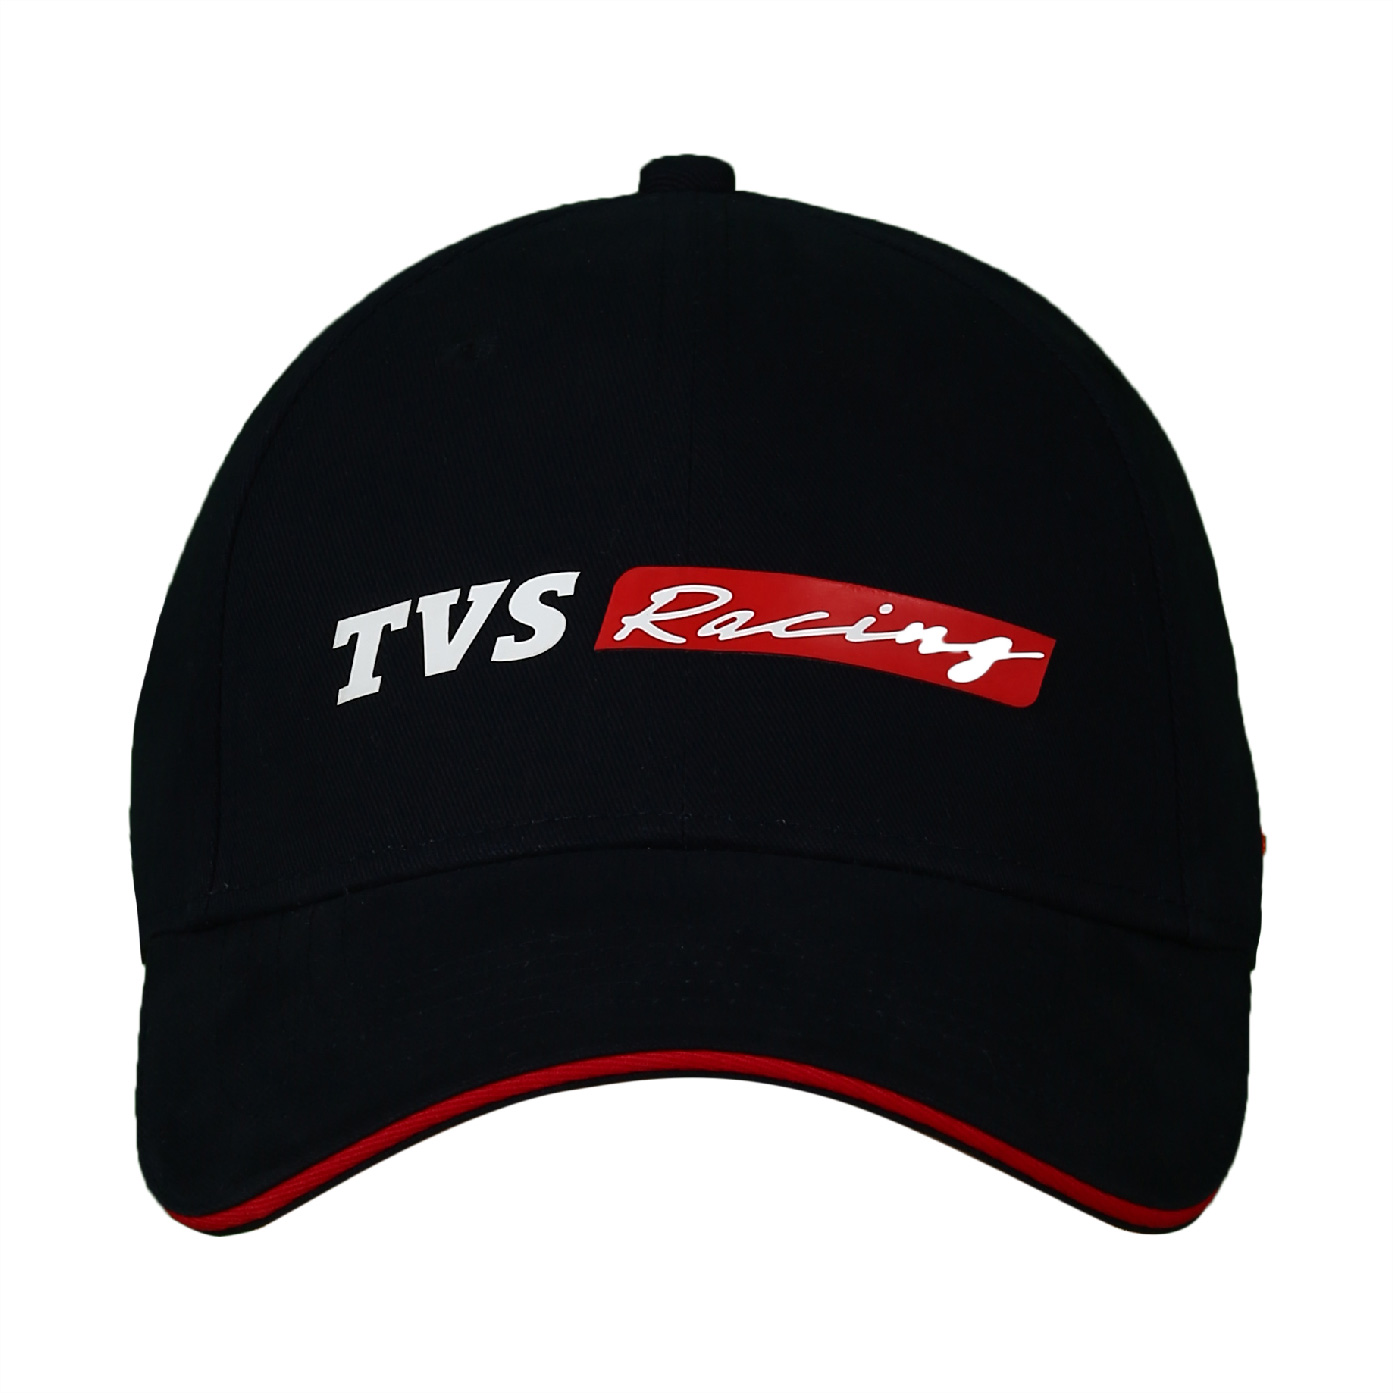  TVS Racing Cap - Black